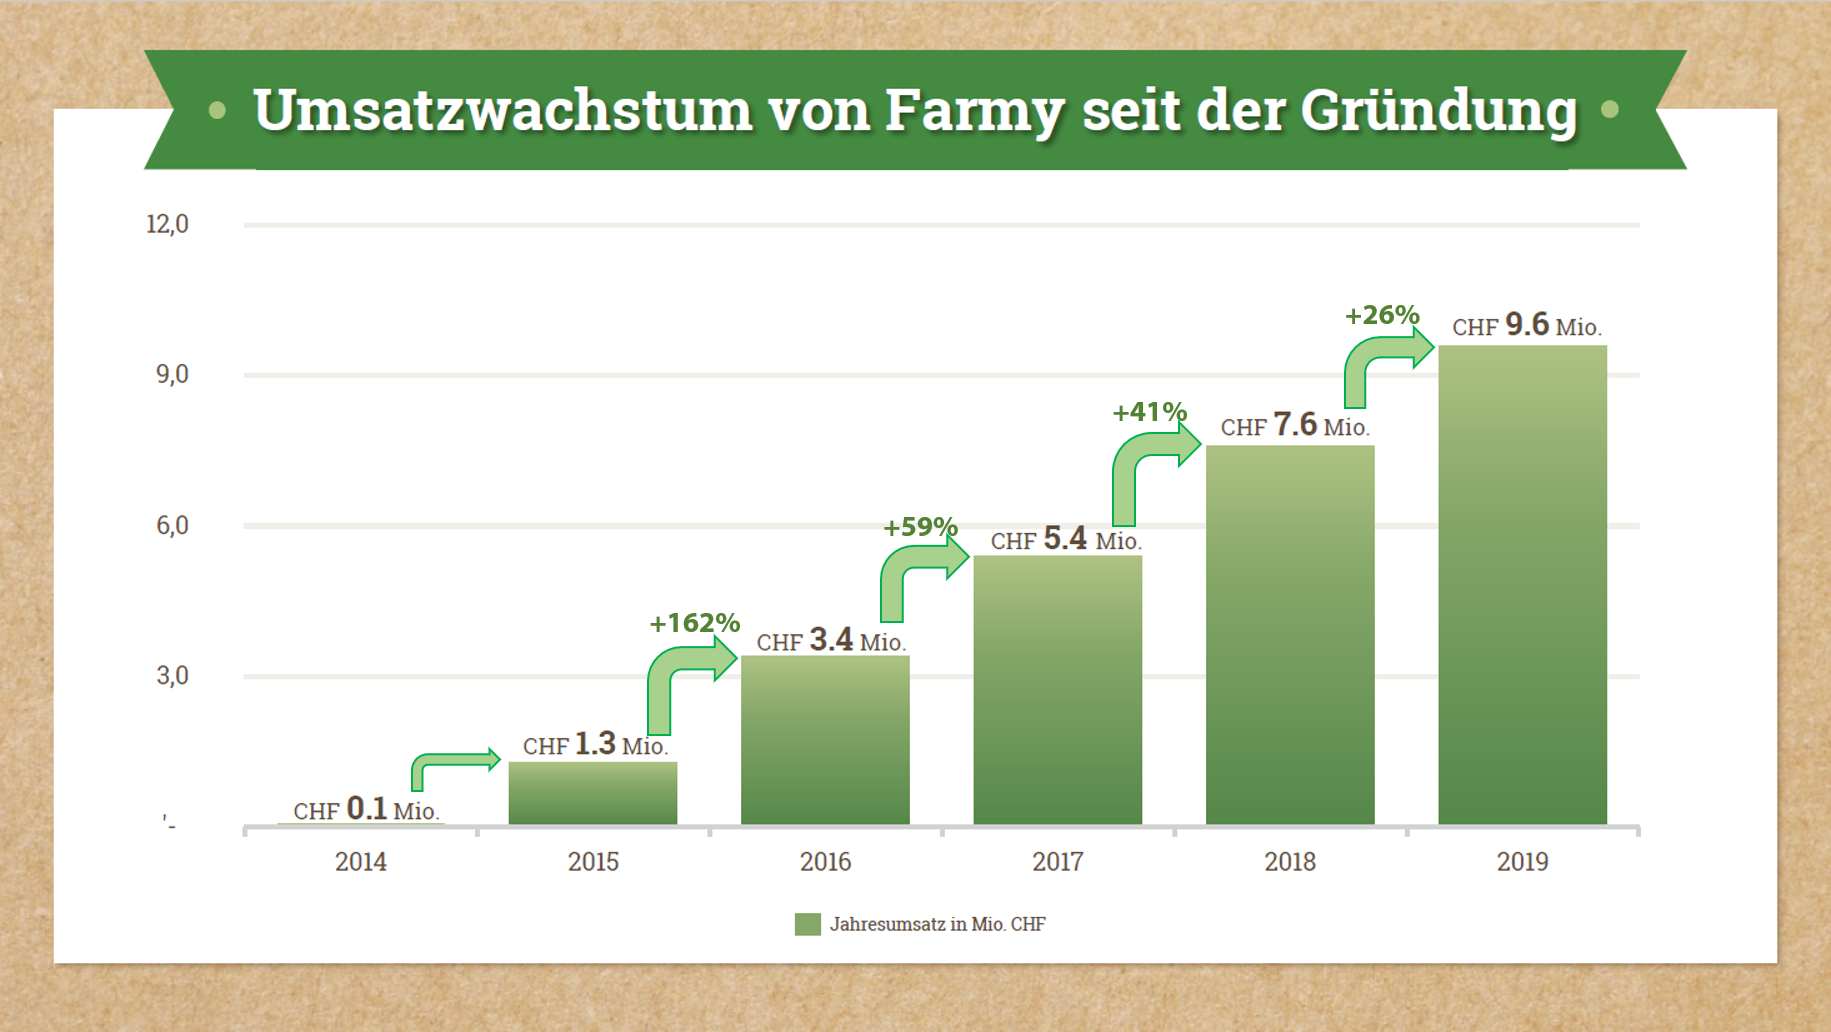 Umsatzwachstum von Farmy 2014 - 2019 / Quelle: Farmy.ch mit Ergänzungen Carpathia AG